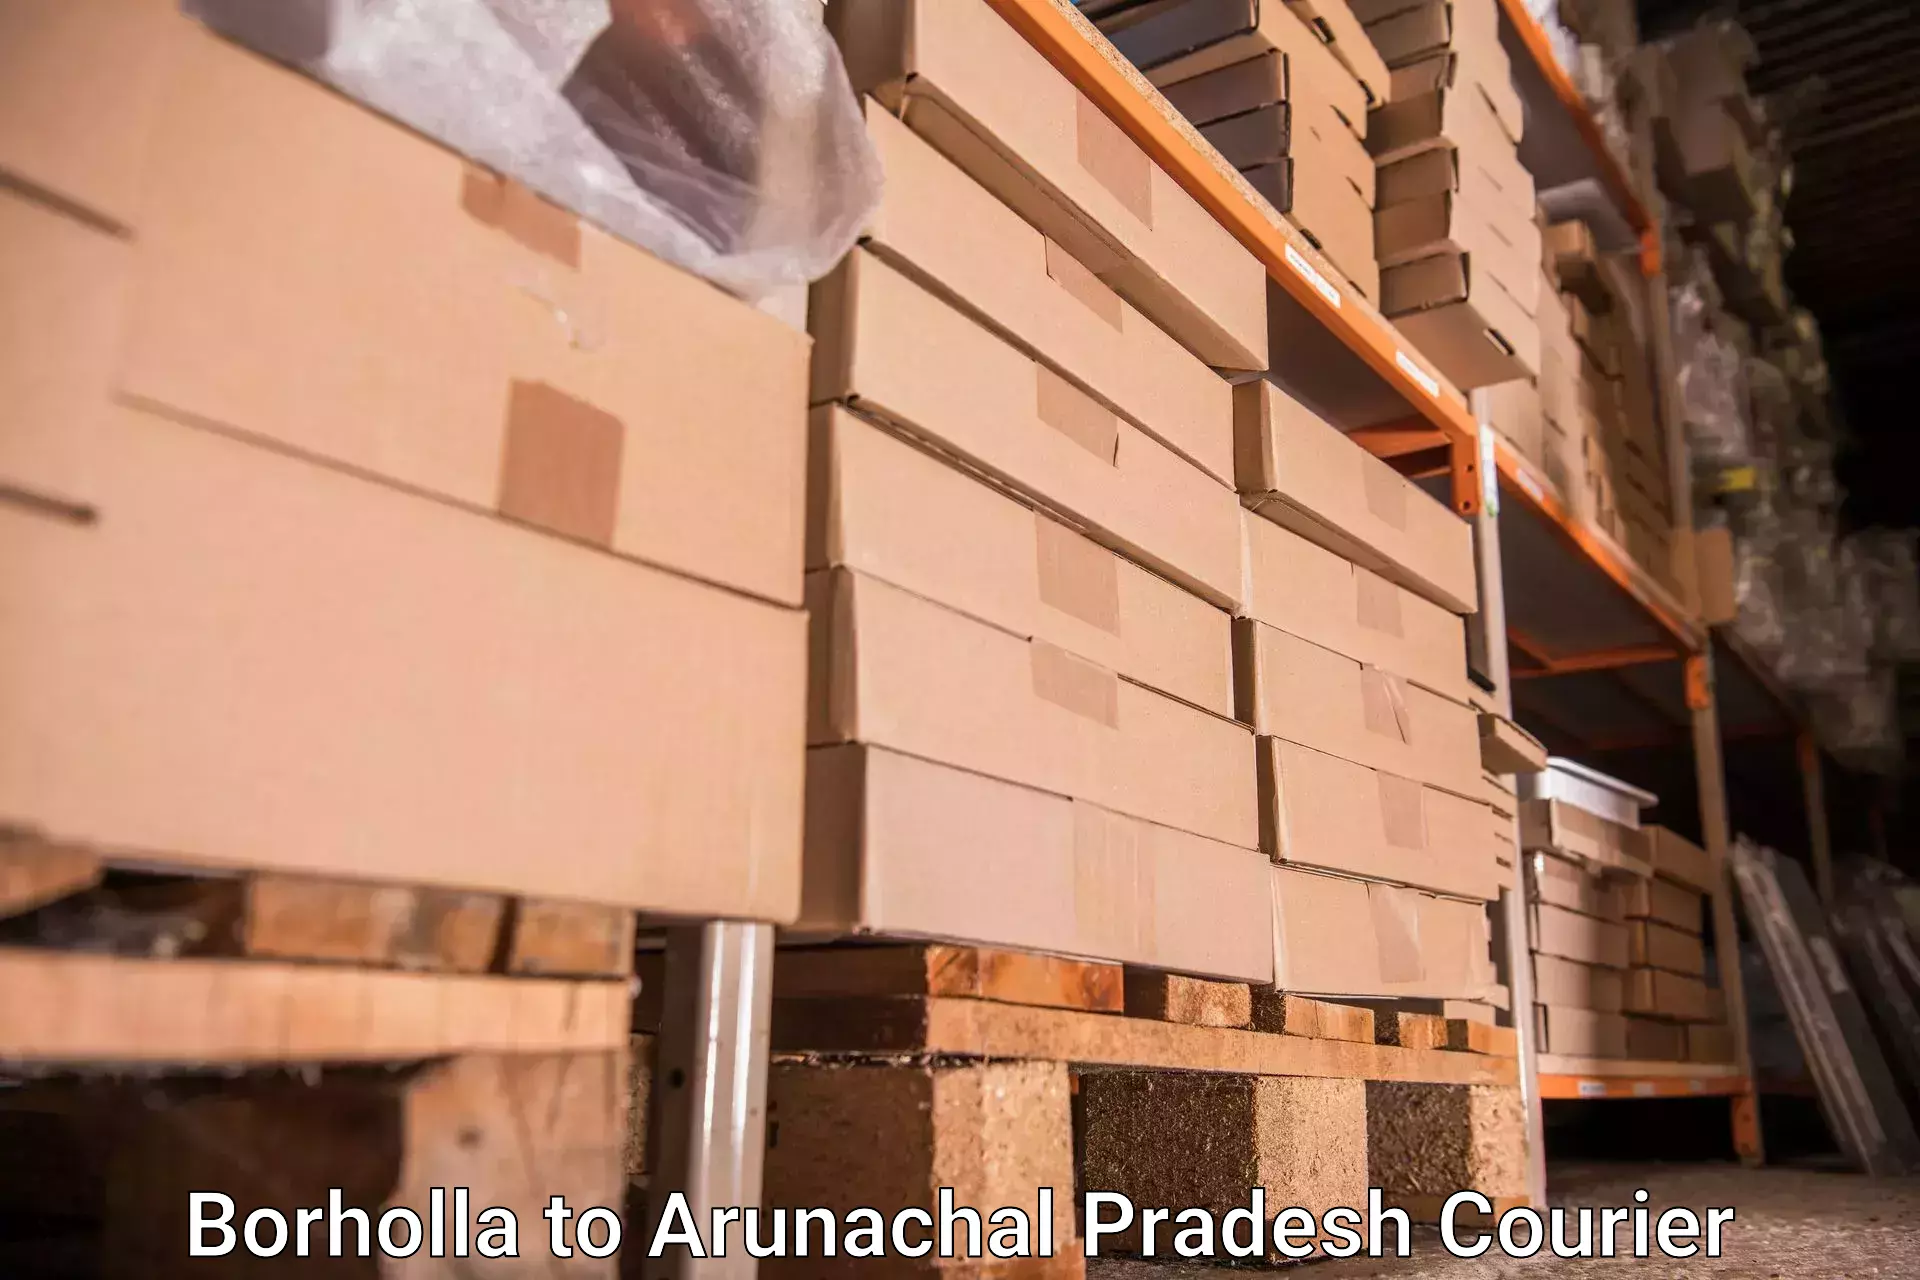 Baggage courier service Borholla to Arunachal Pradesh